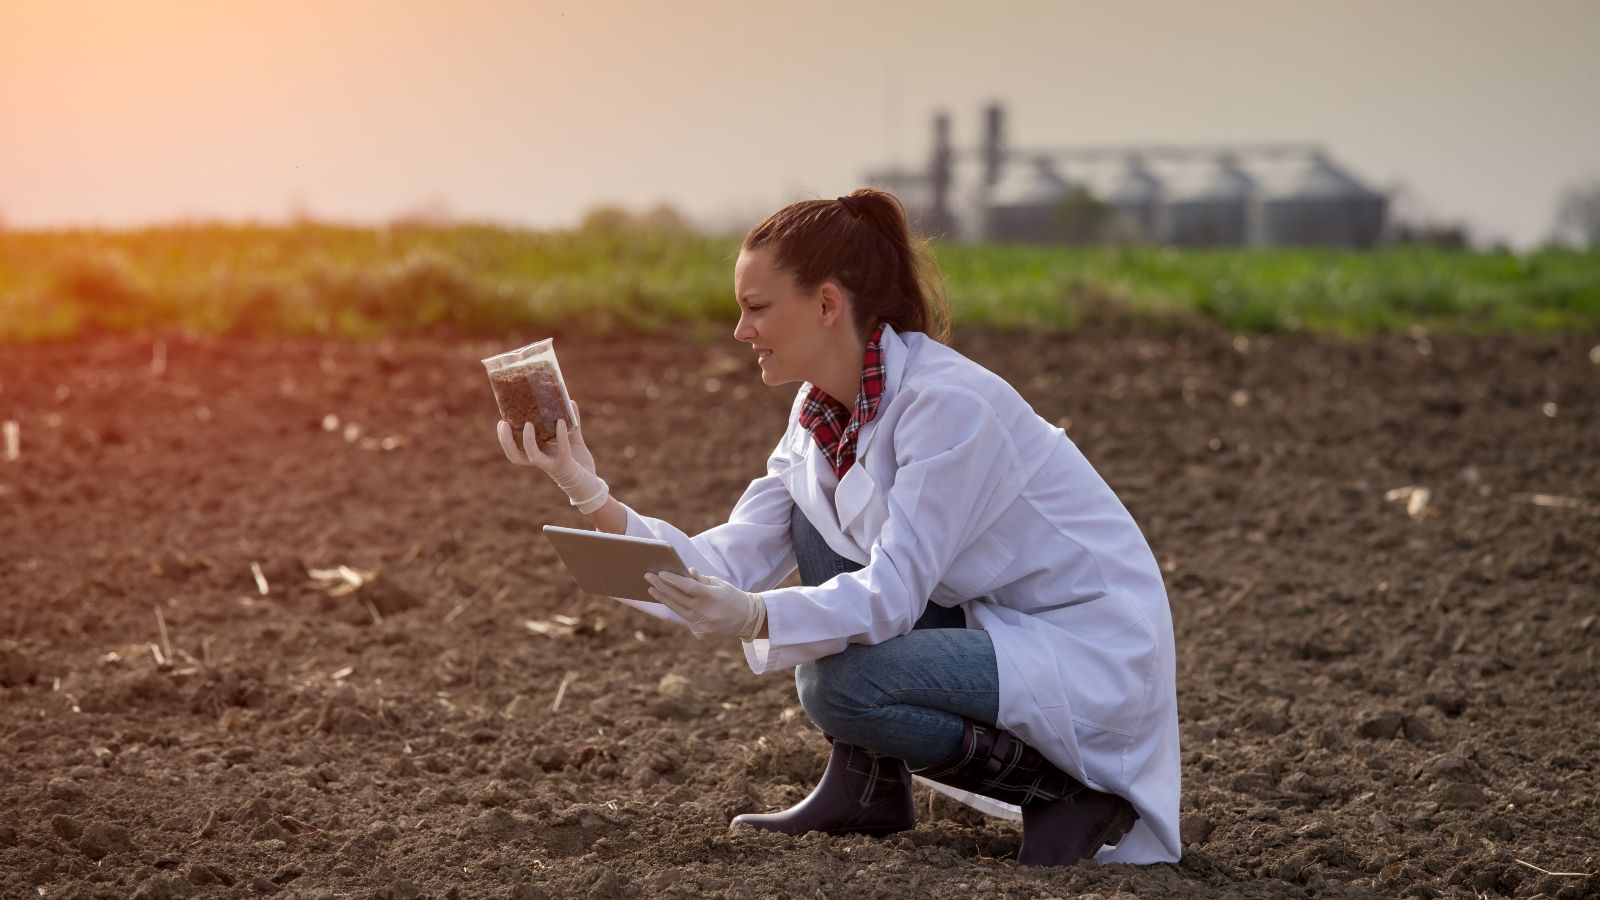 Eine Frau mit weißem Laborkittel kniet auf einem Acker und hält ein Becherglas mit einer Bodenprobe und ein Tablet in den Händen. Im Hintergrund sind eine Wiese und eine Biogasanlage zu sehen.